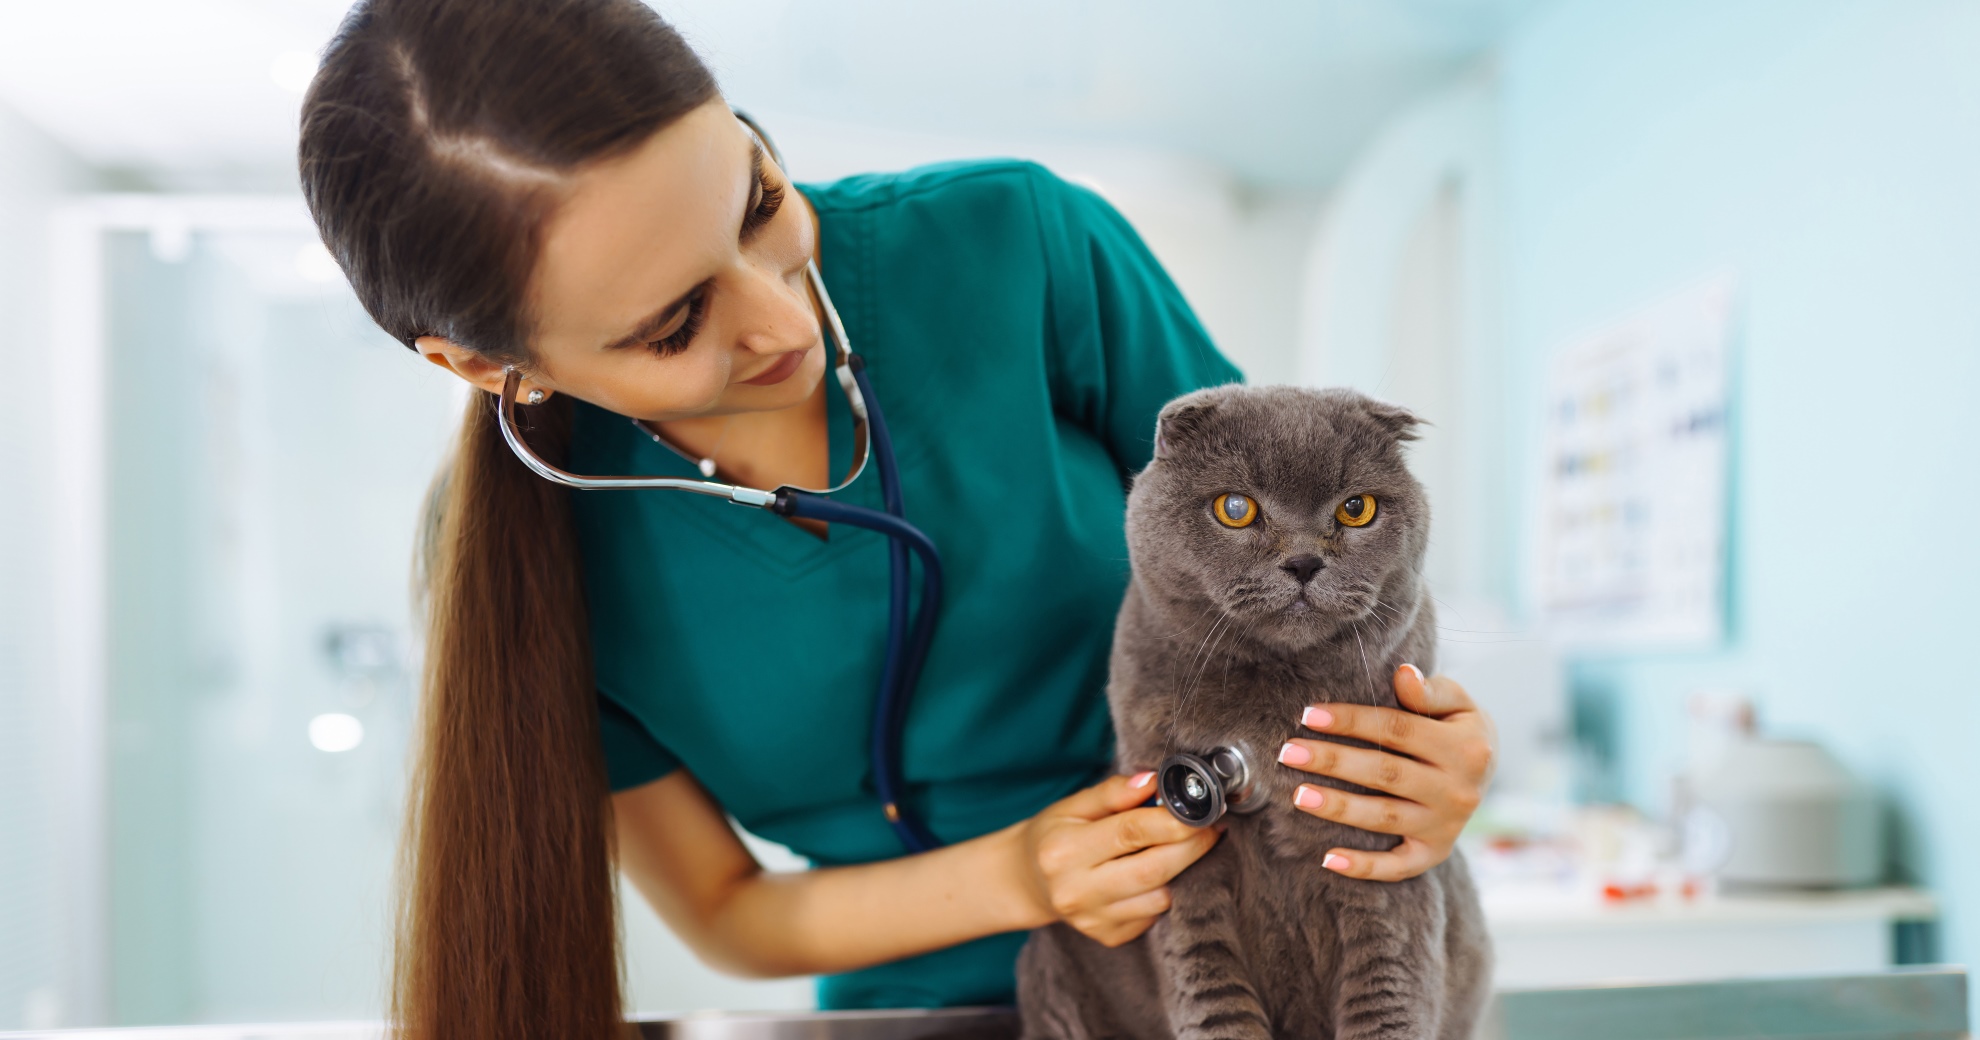 Soins et hygiène du chat : les interventions courantes à prodiguer